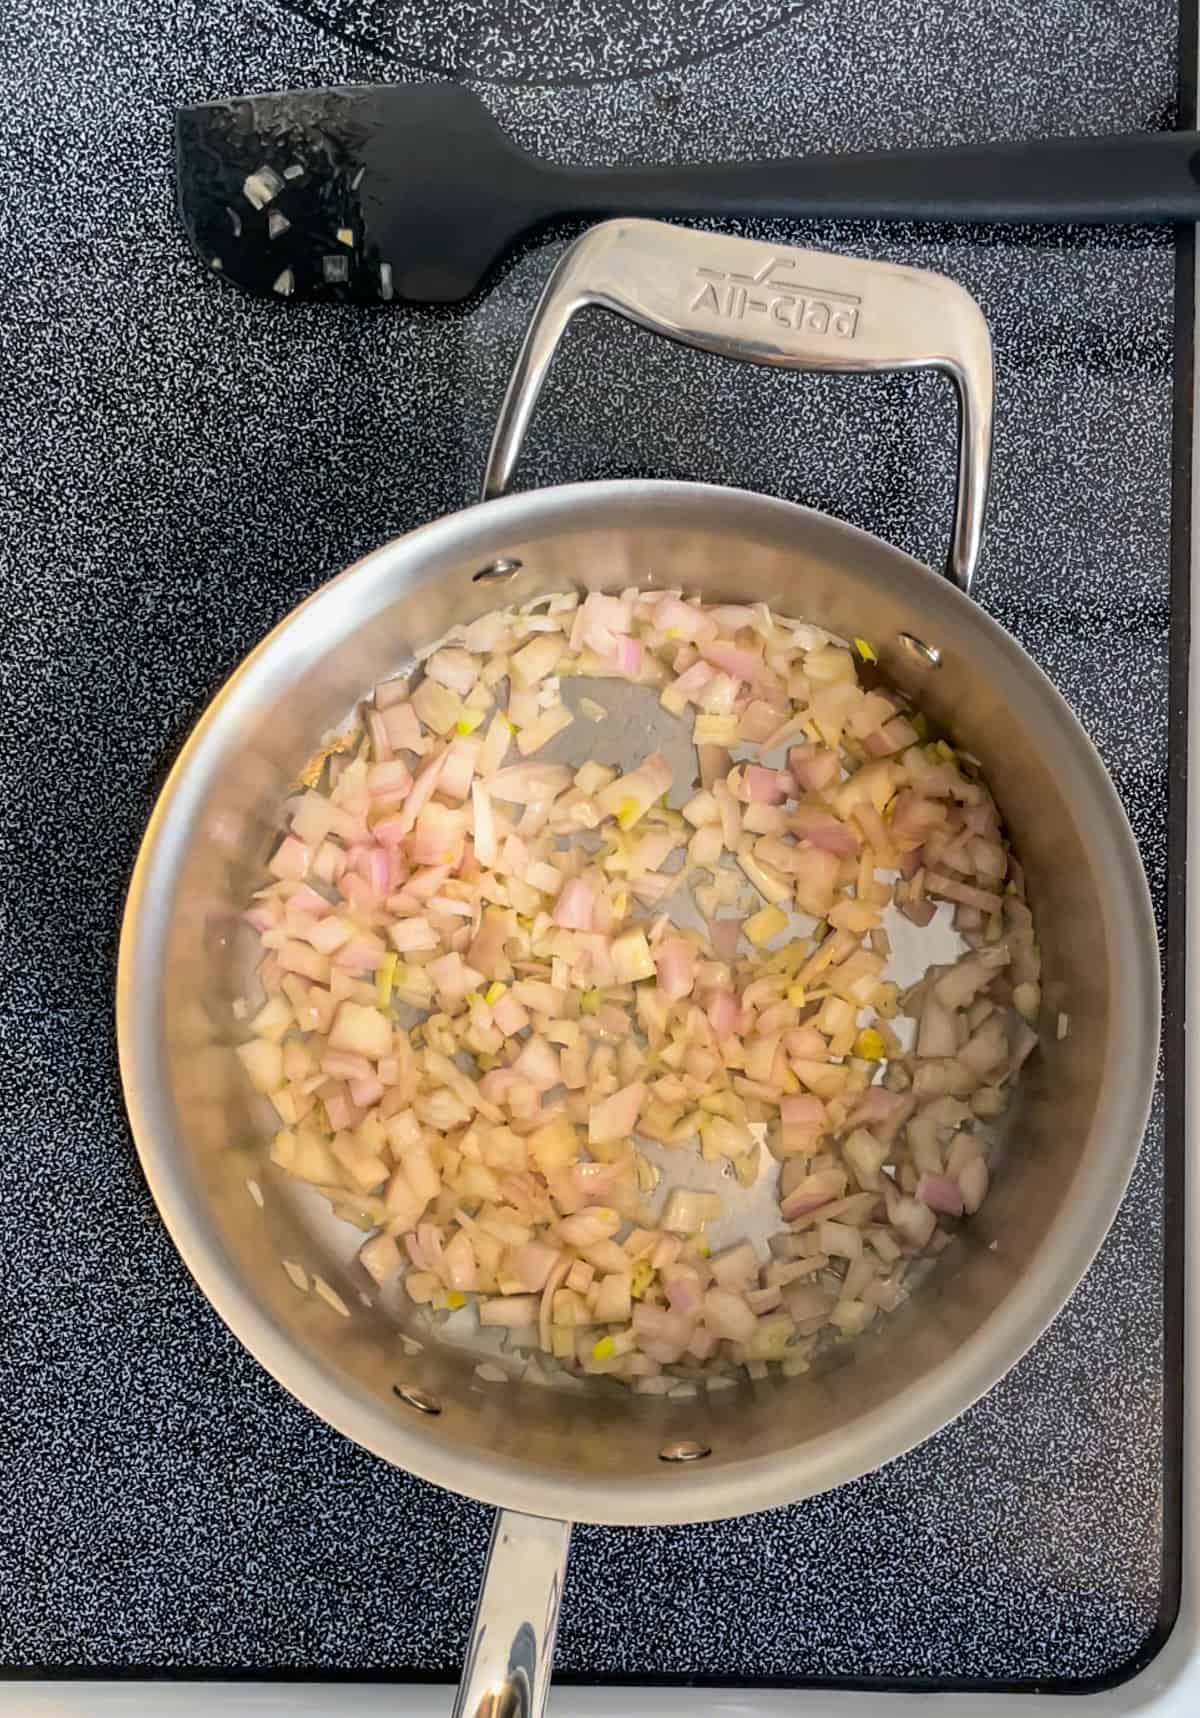 https://thishomekitchen.com/wp-content/uploads/2022/02/Shallots-and-garlic-saute%CC%81ing-for-honey-mustard-dip.jpg